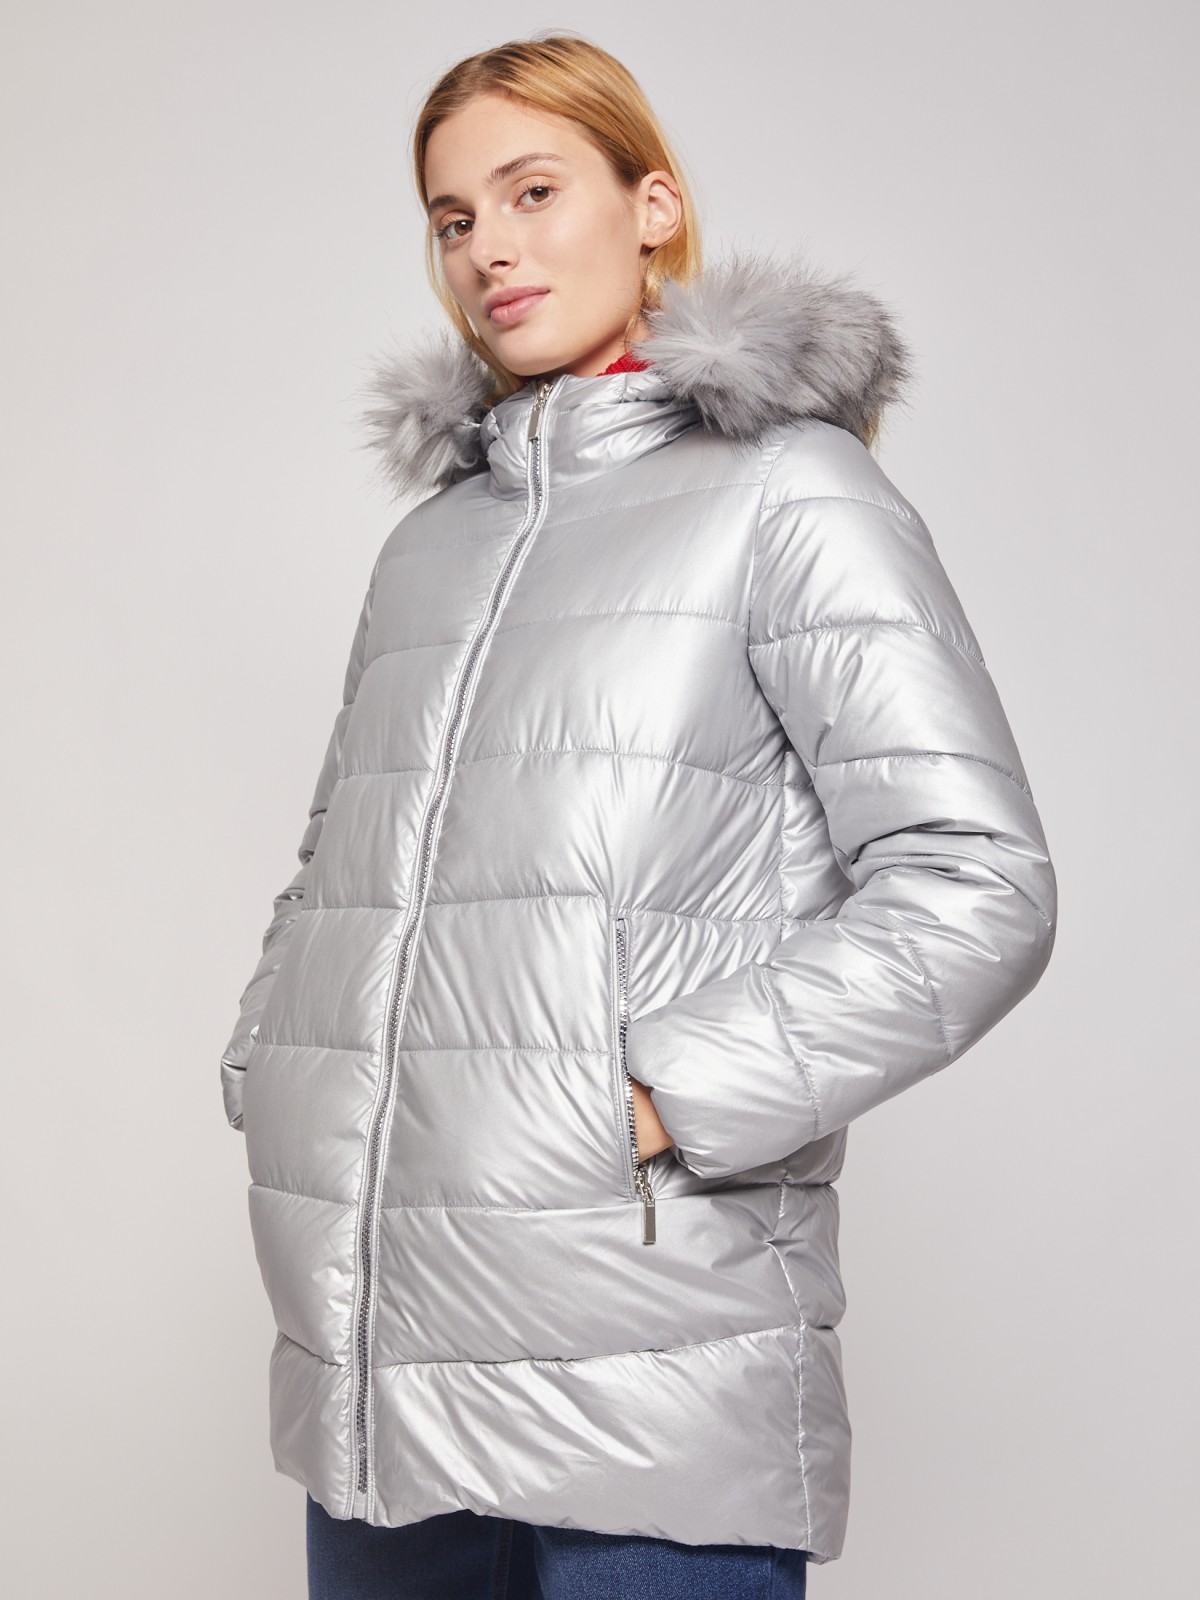 Утеплённая куртка с меховой опушкой zolla 020345112704, цвет серебряный, размер XS - фото 2